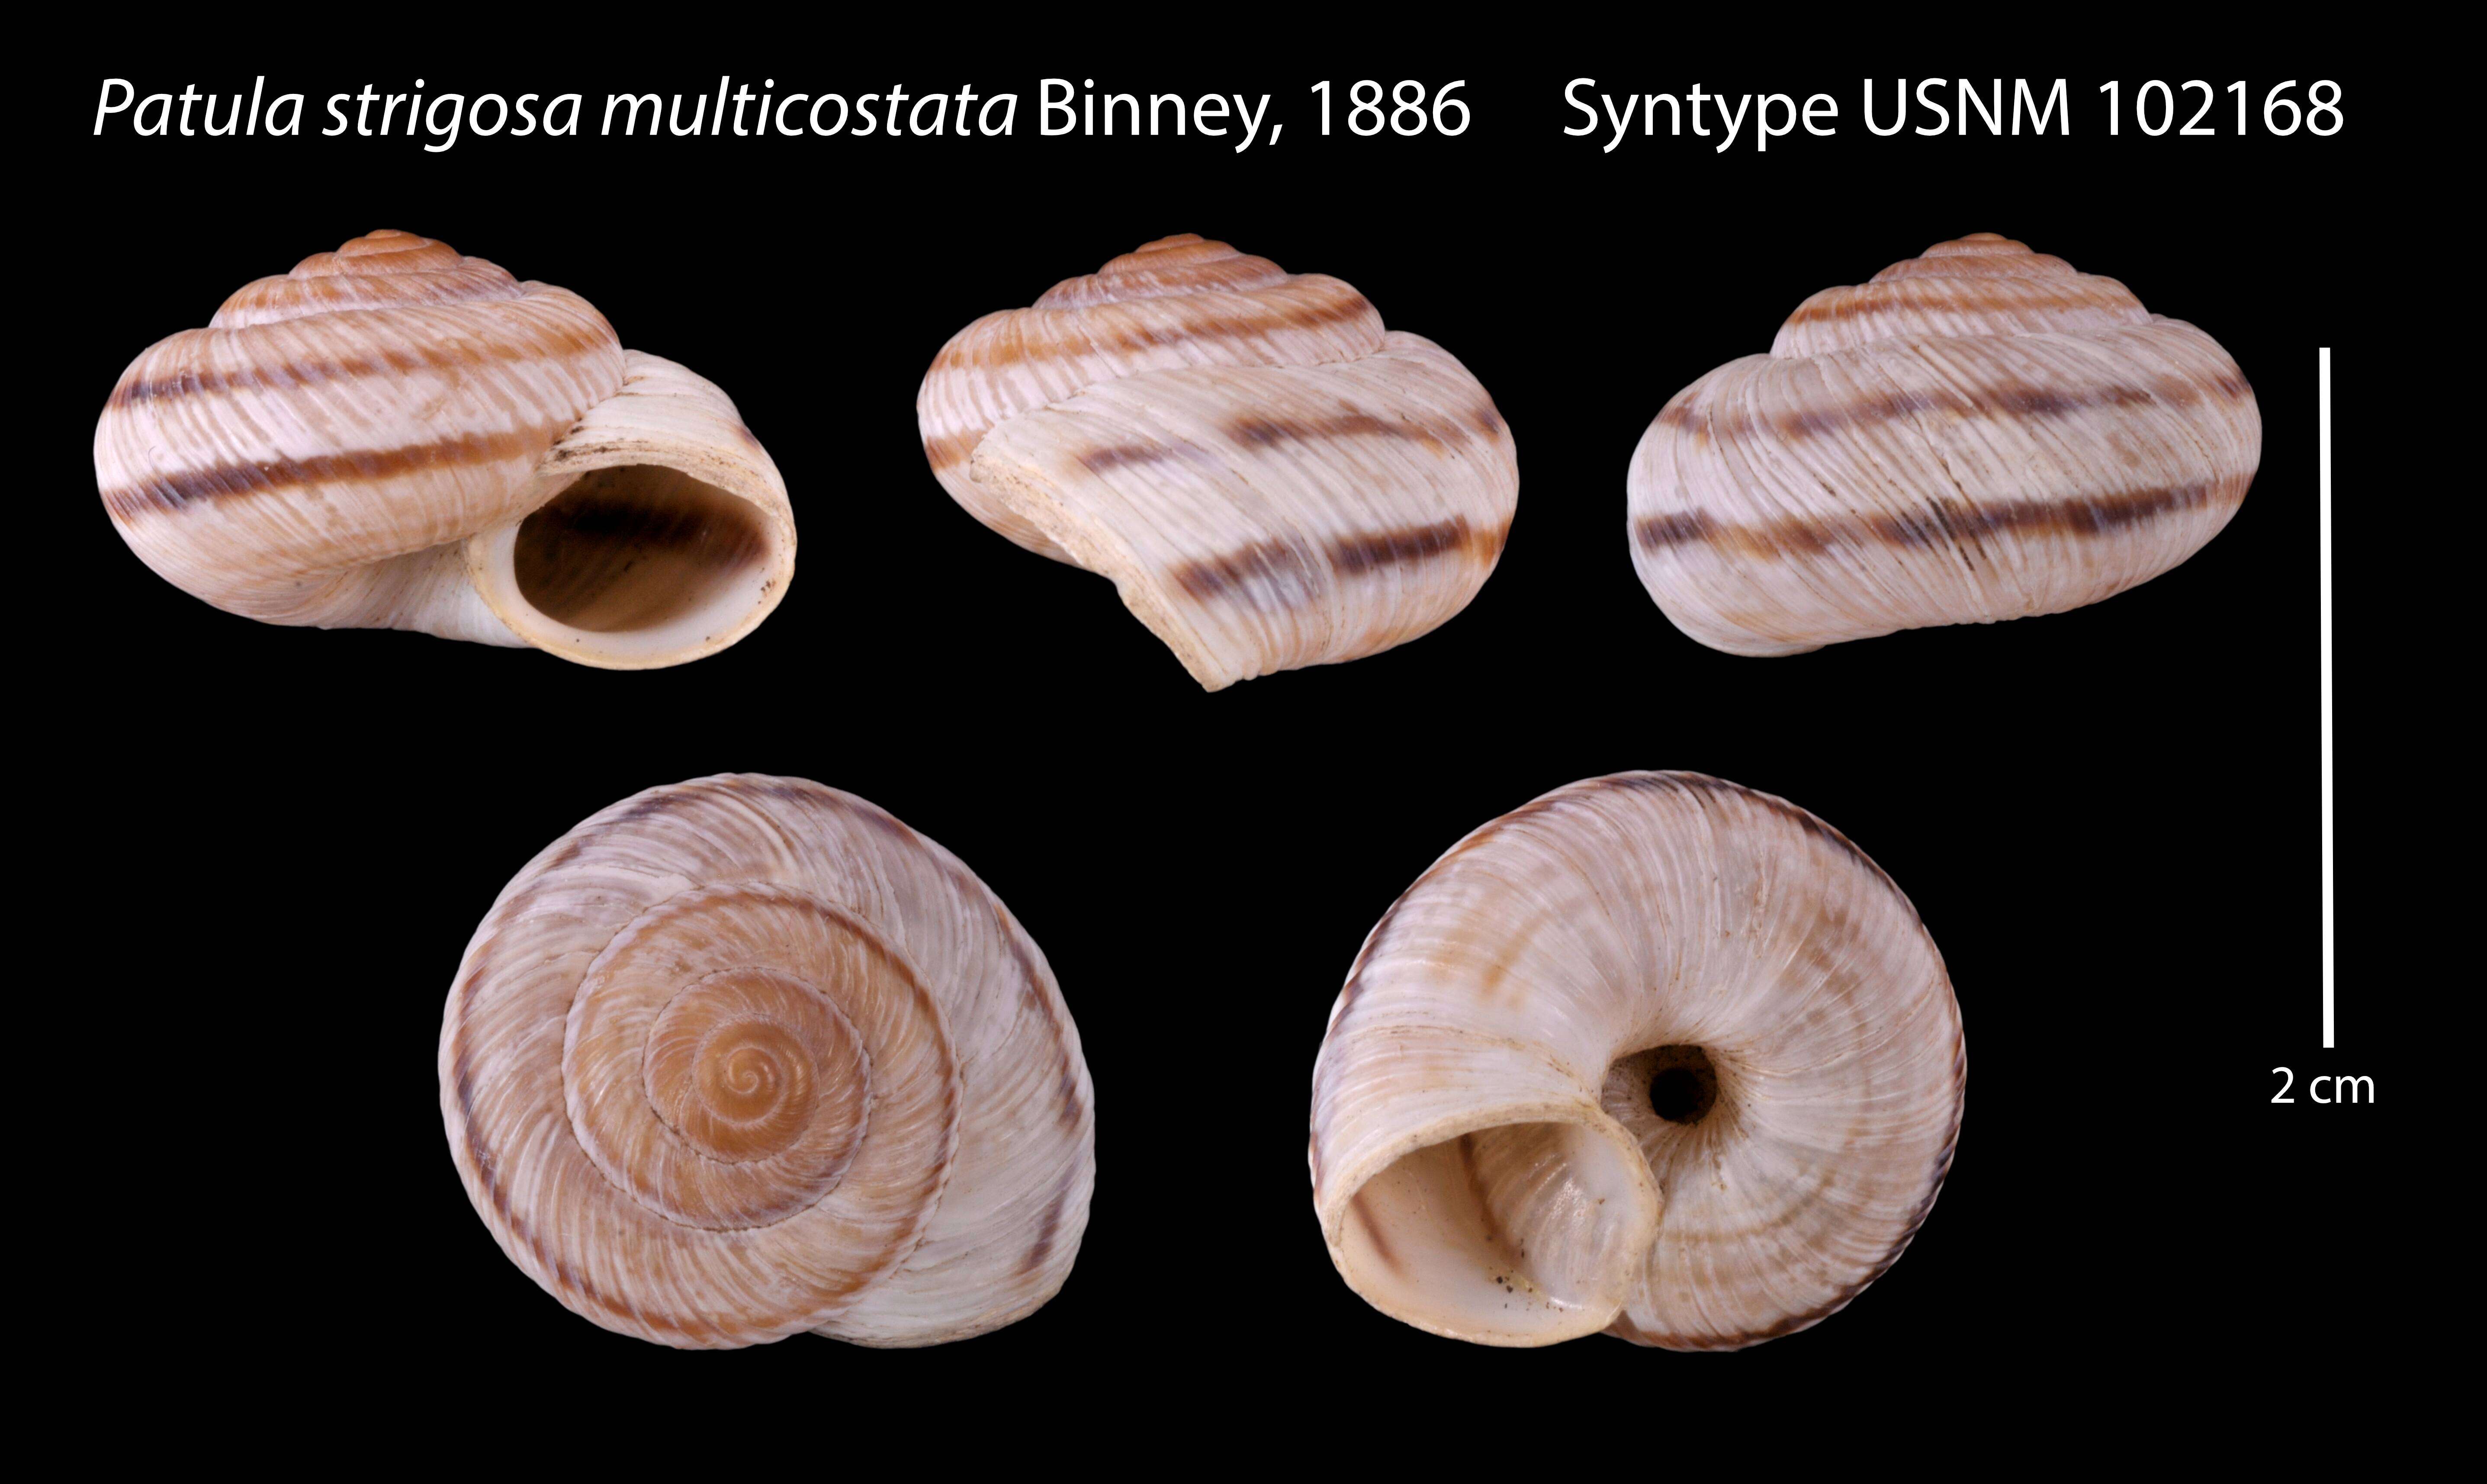 Image of Patula strigosa multicostata Binney